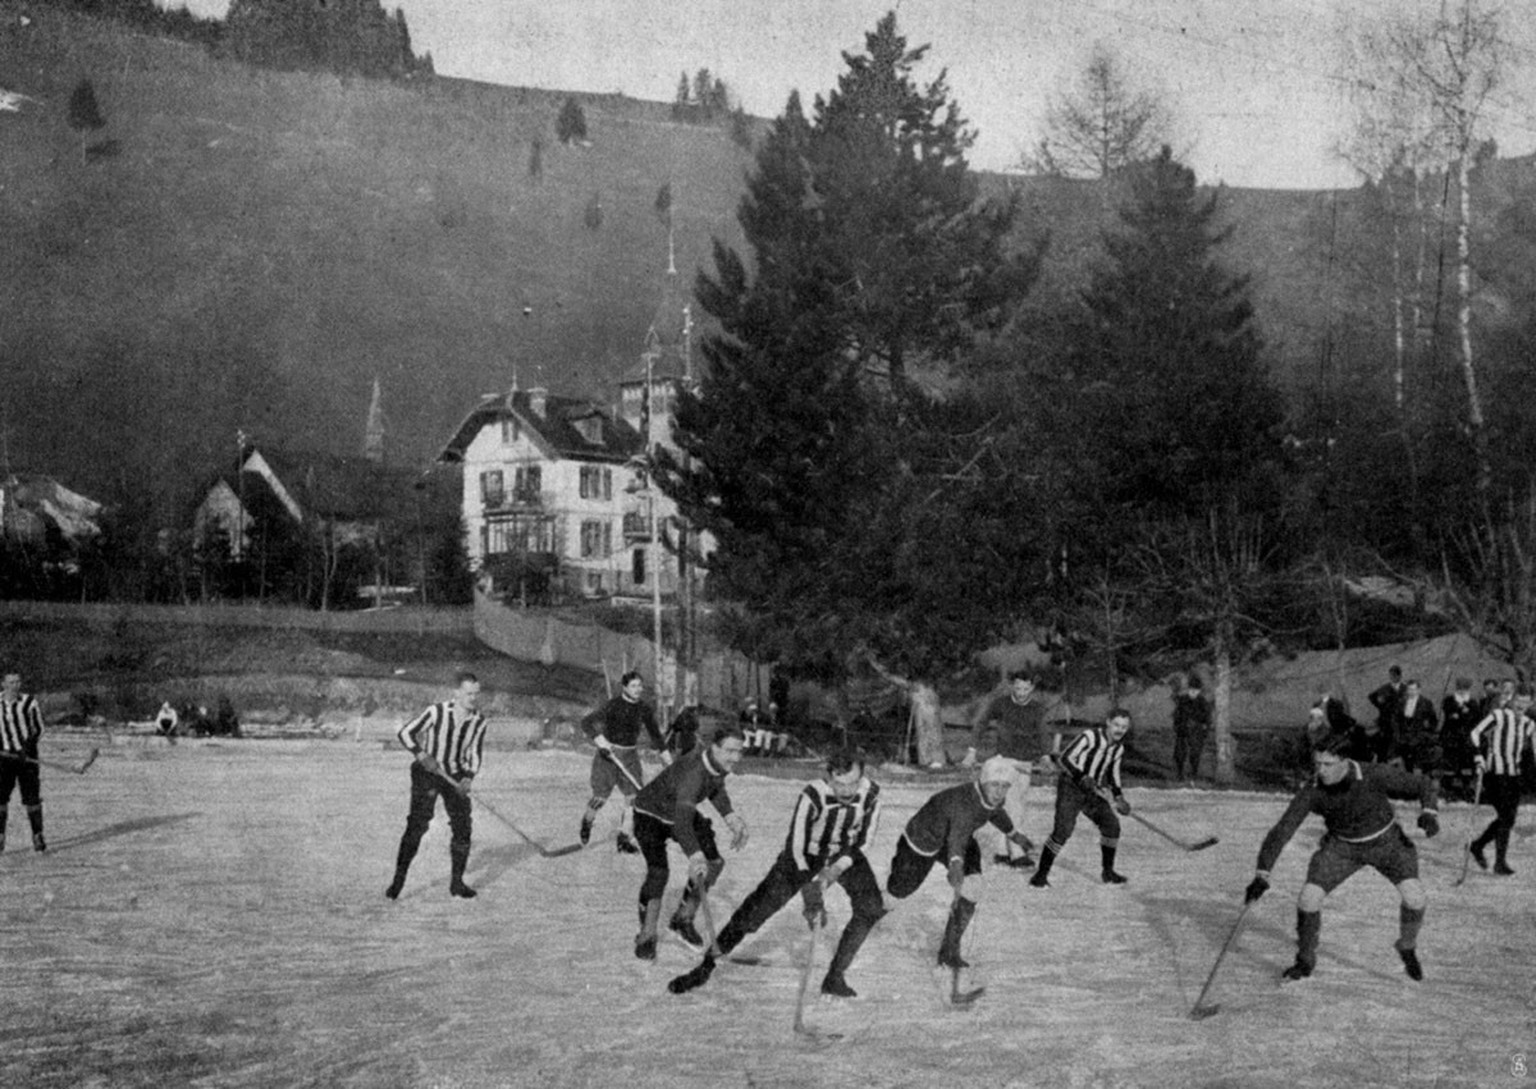 Der Berliner Schlittschuh-Club gegen den Brüsseler Eishockey-Club an der ersten Europa-Meisterschaft 1910 in Les Avants bei Montreux.
https://commons.wikimedia.org/wiki/File:1910_Ice_Hockey_European_C ...